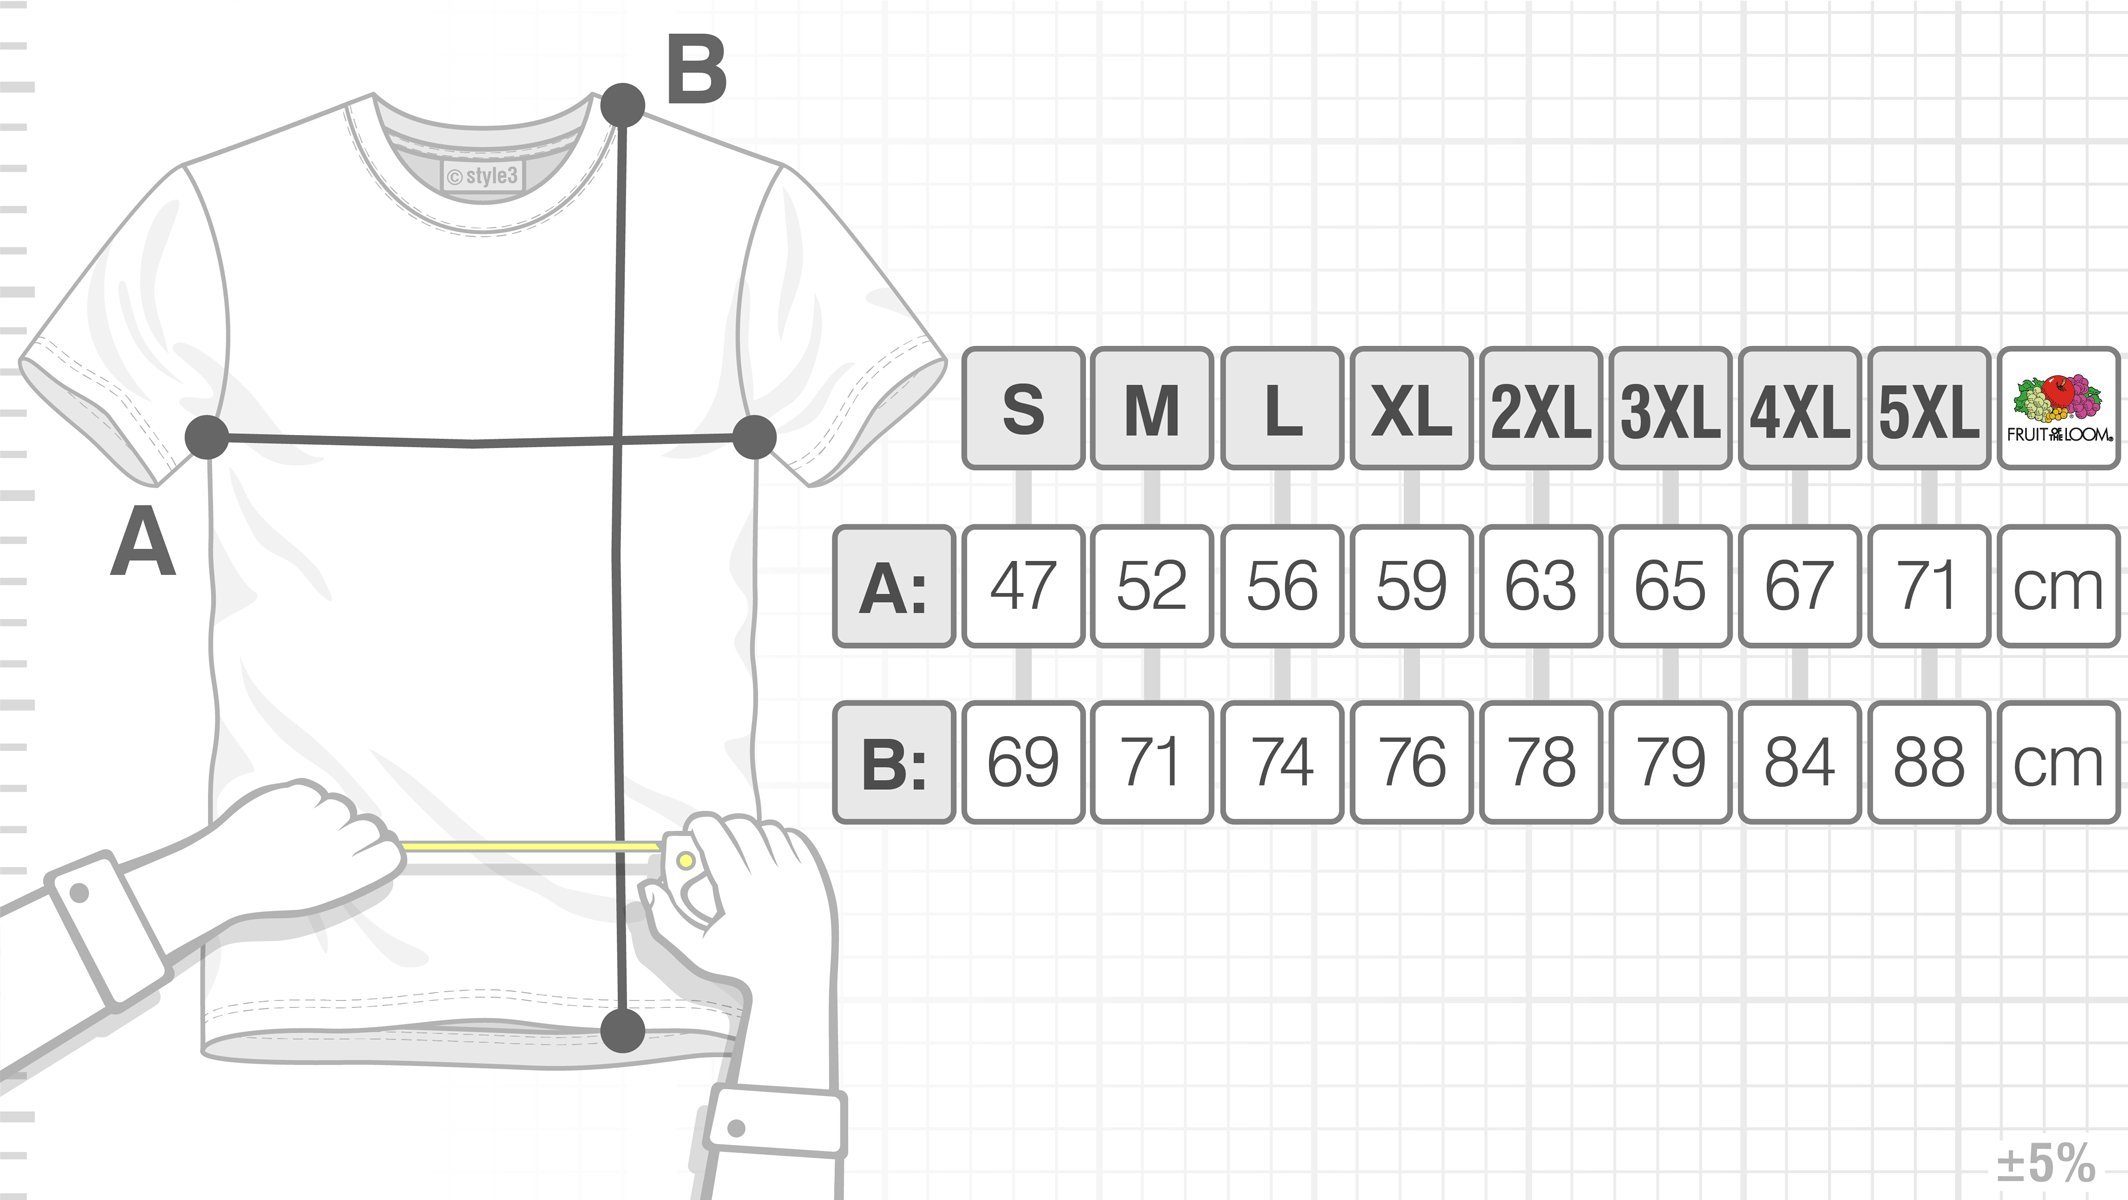 T-Shirt Cooper the Sheldon Color Herren Penrose style3 Dreieck Escher Bang Theory Print-Shirt Big weiß